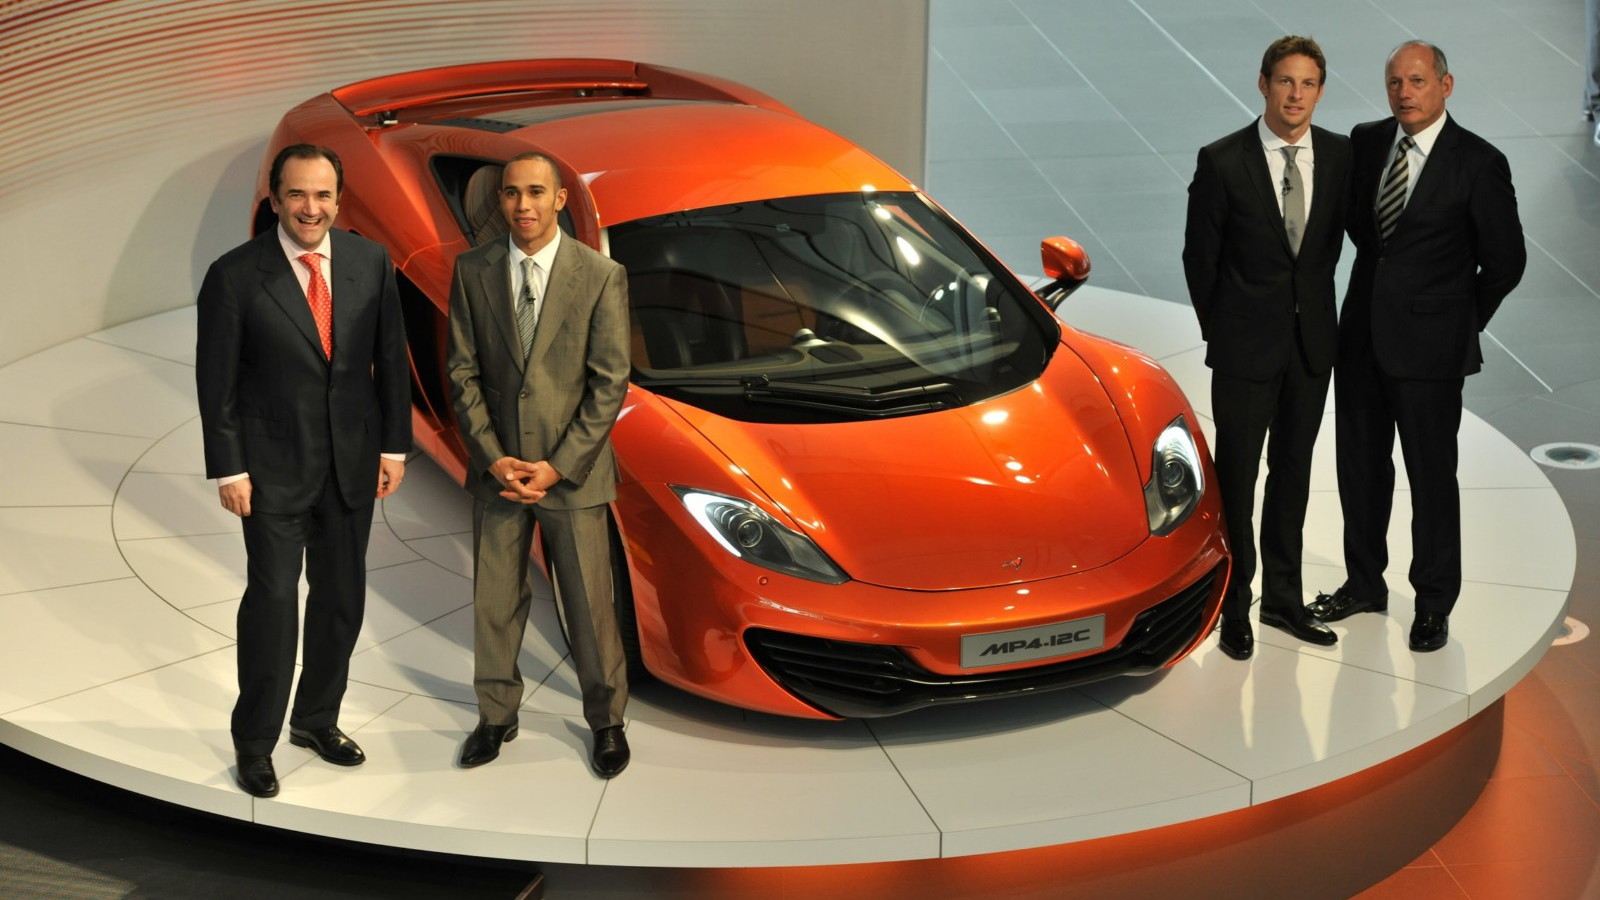 McLaren Automotive launch presentation